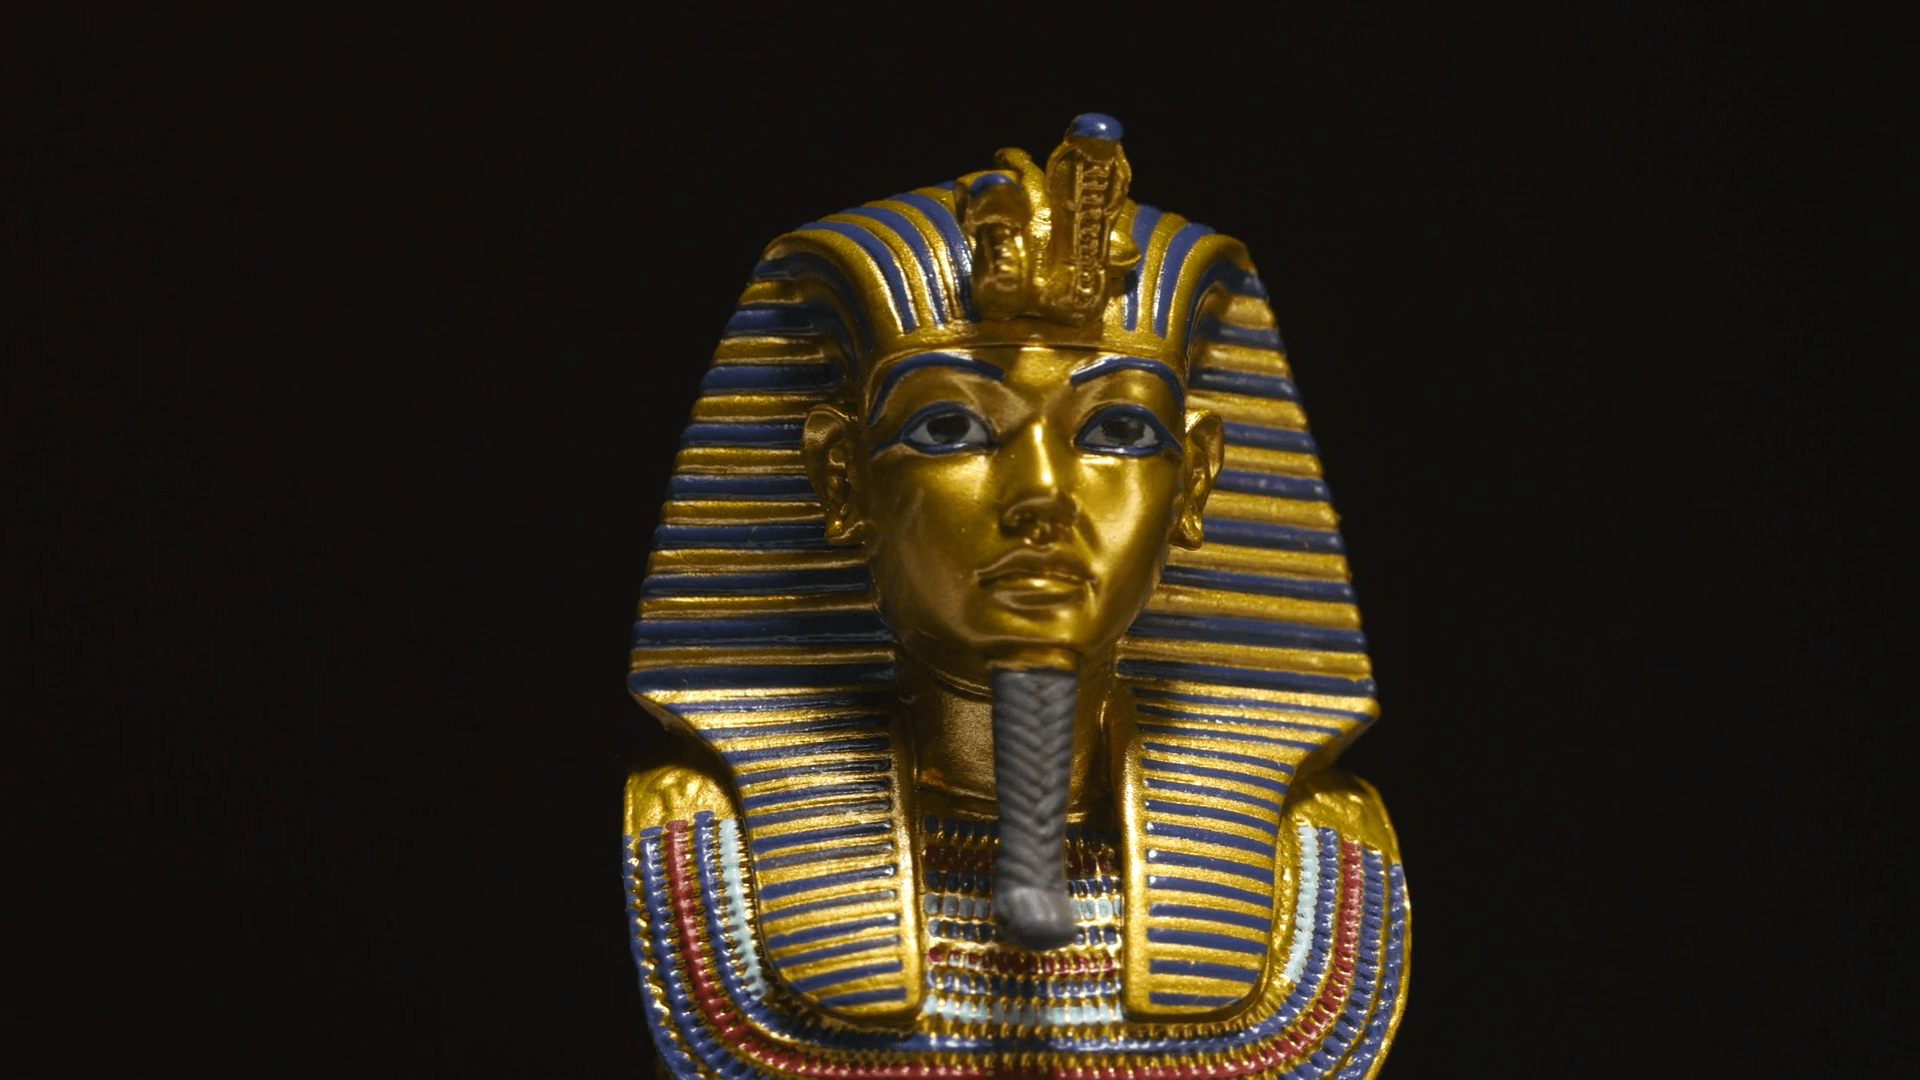 Фараон на букву т. Фараоны древнего Египта. Культ фараона в древнем Египте. Фараон Хуфу Хеопс портрет. Фараона Тутанхамона Египет новое царство.